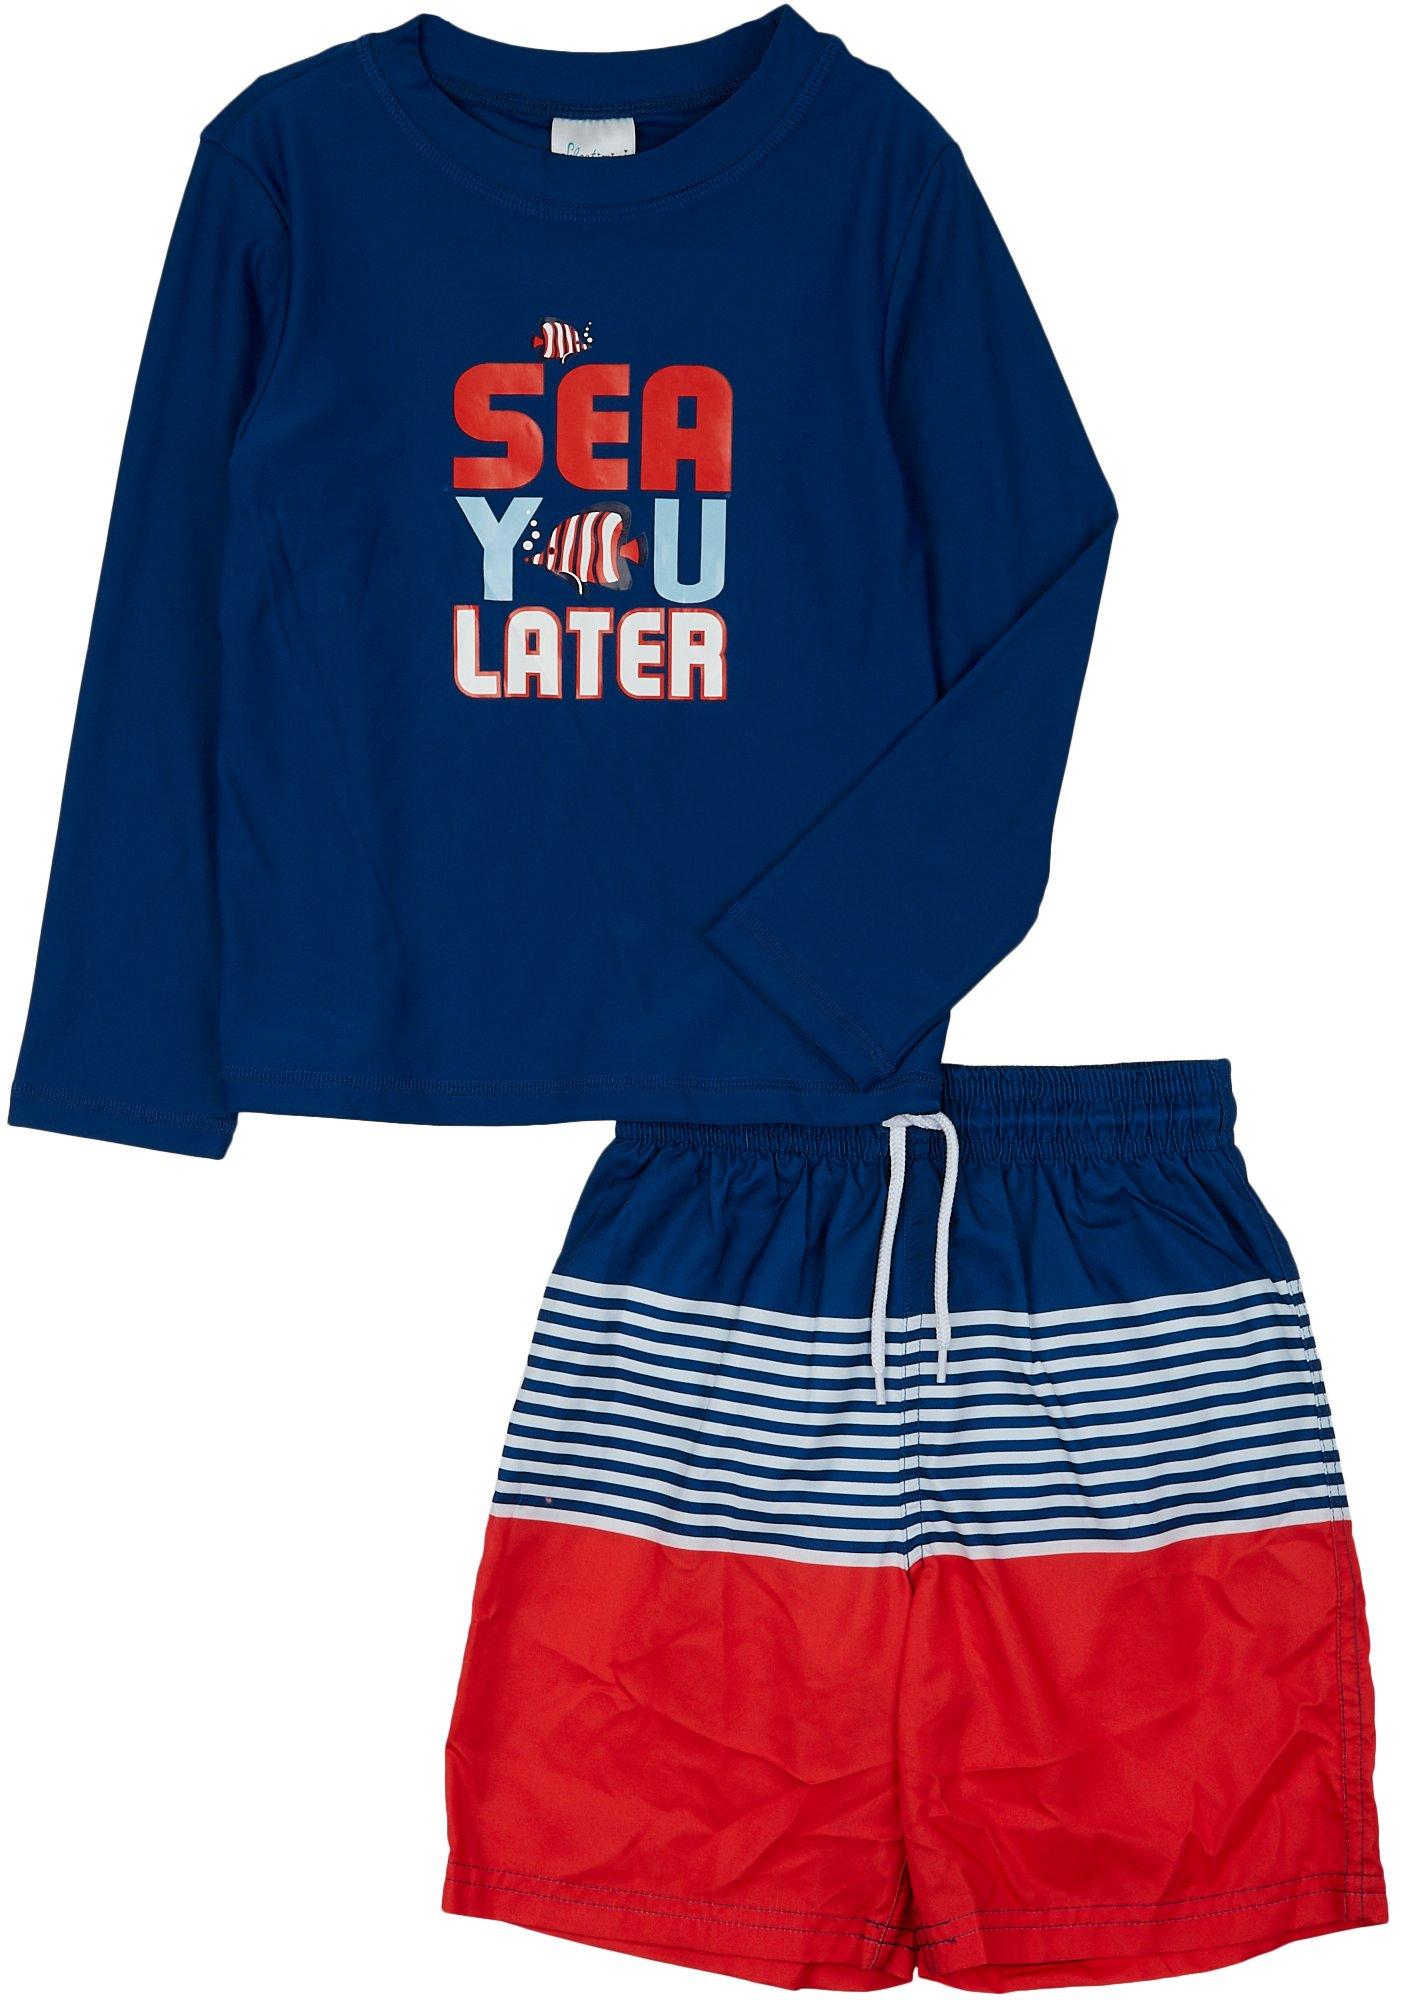 Little Boys 2-pc. Stripe Rashguard Swimsuit Set